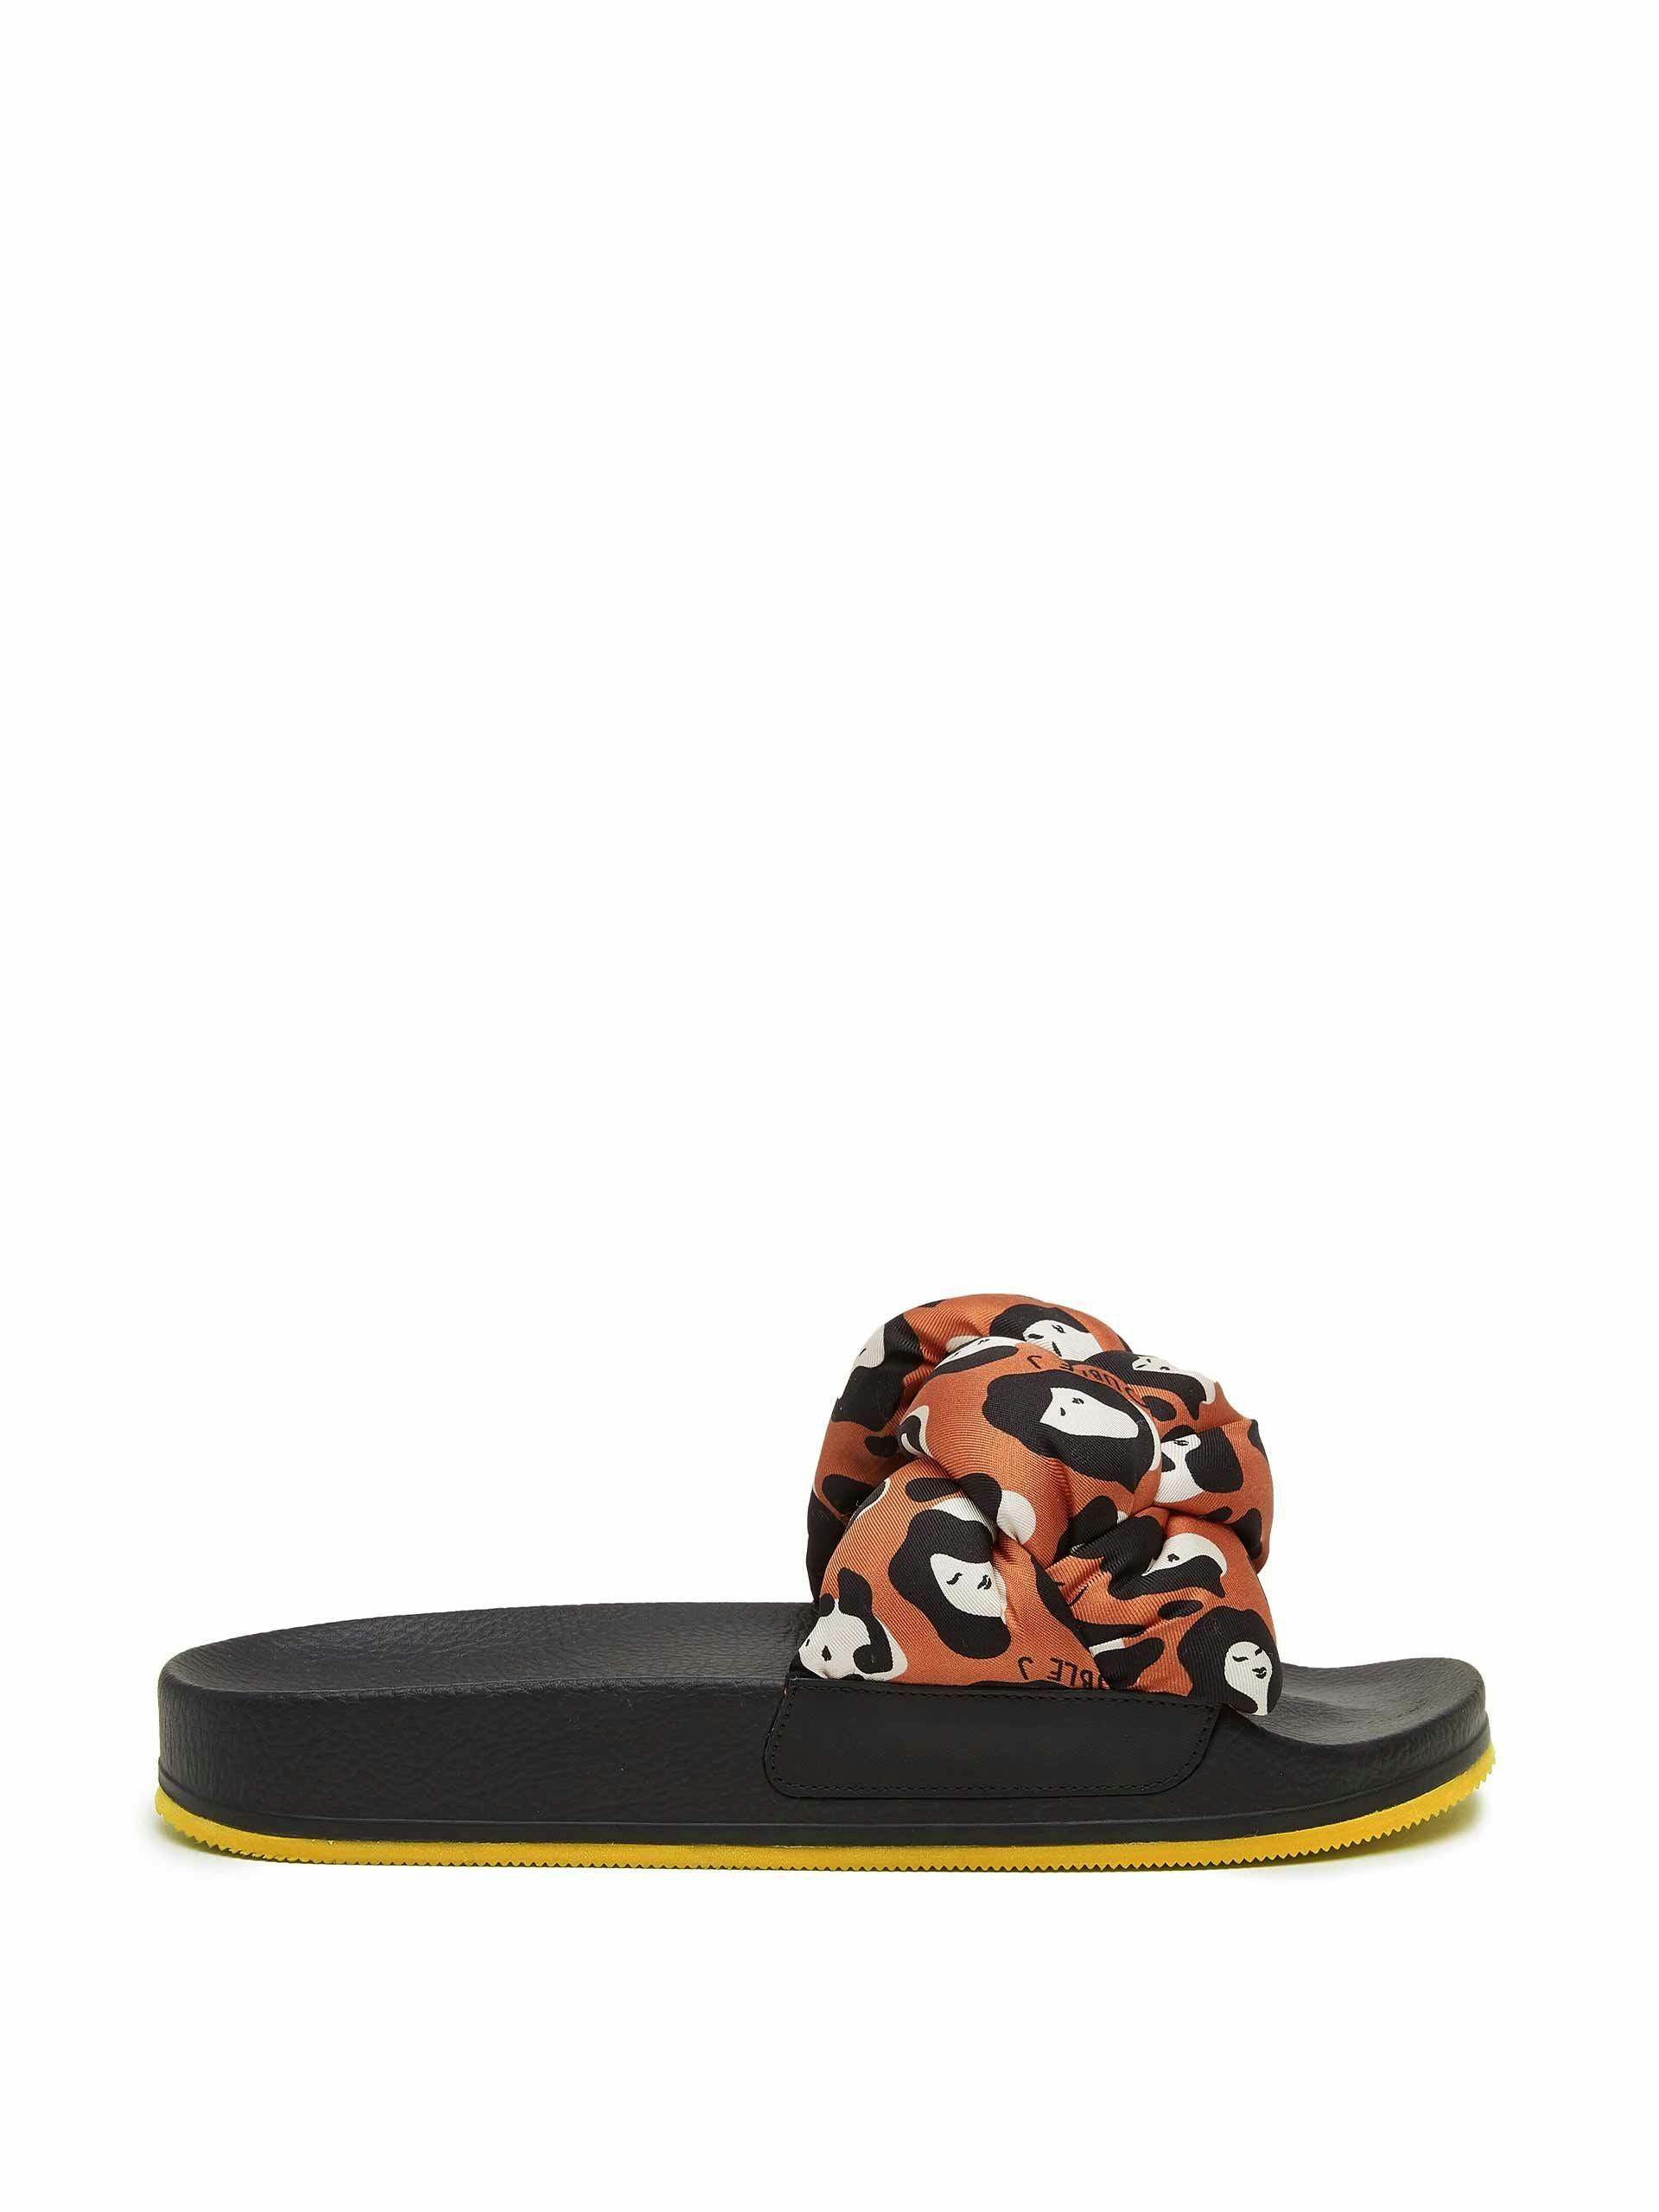 Leopard braided strap slides